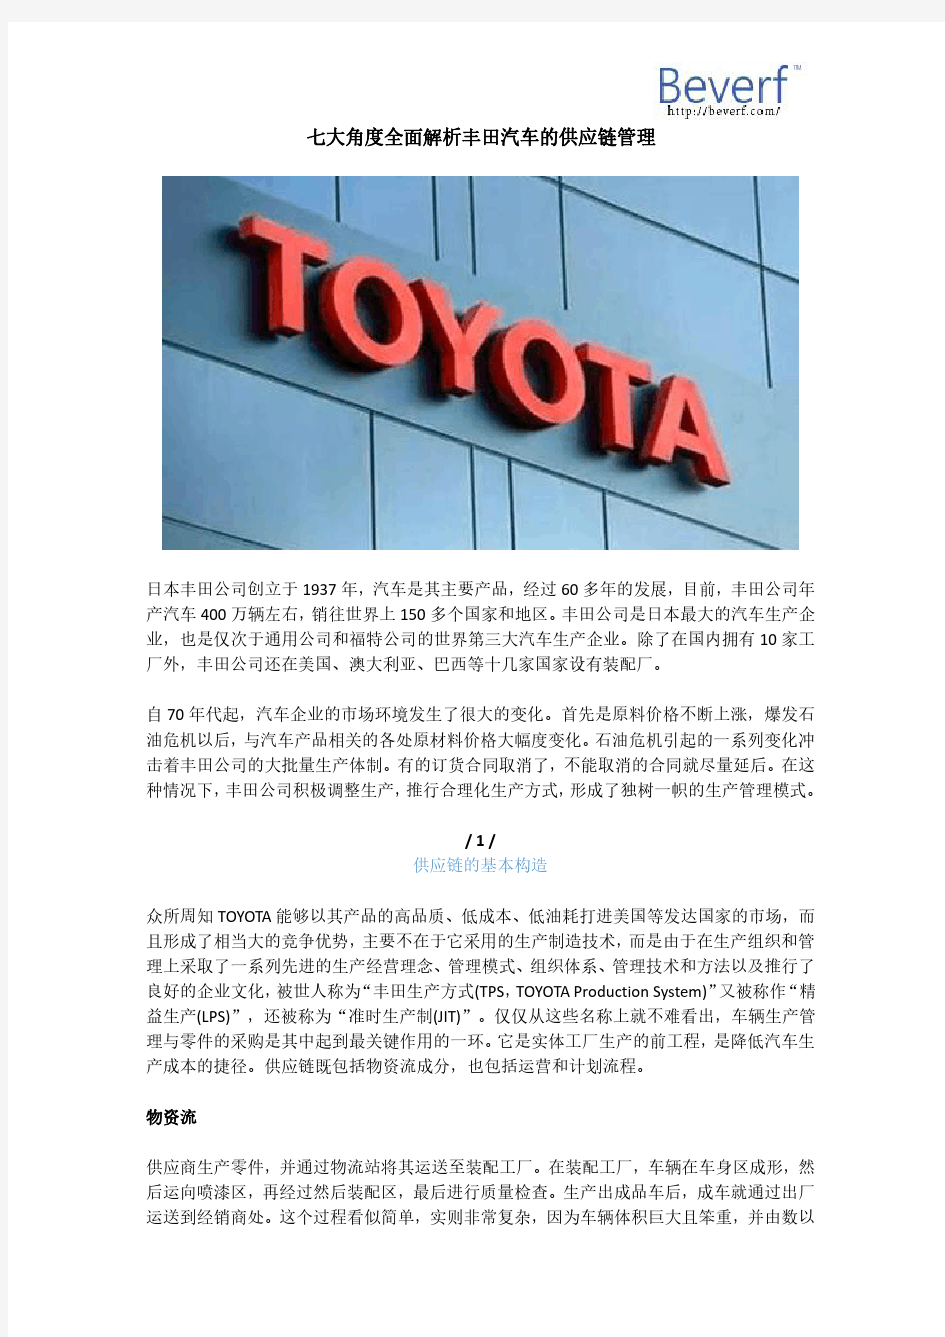 七大角度全面解析丰田汽车的供应链管理